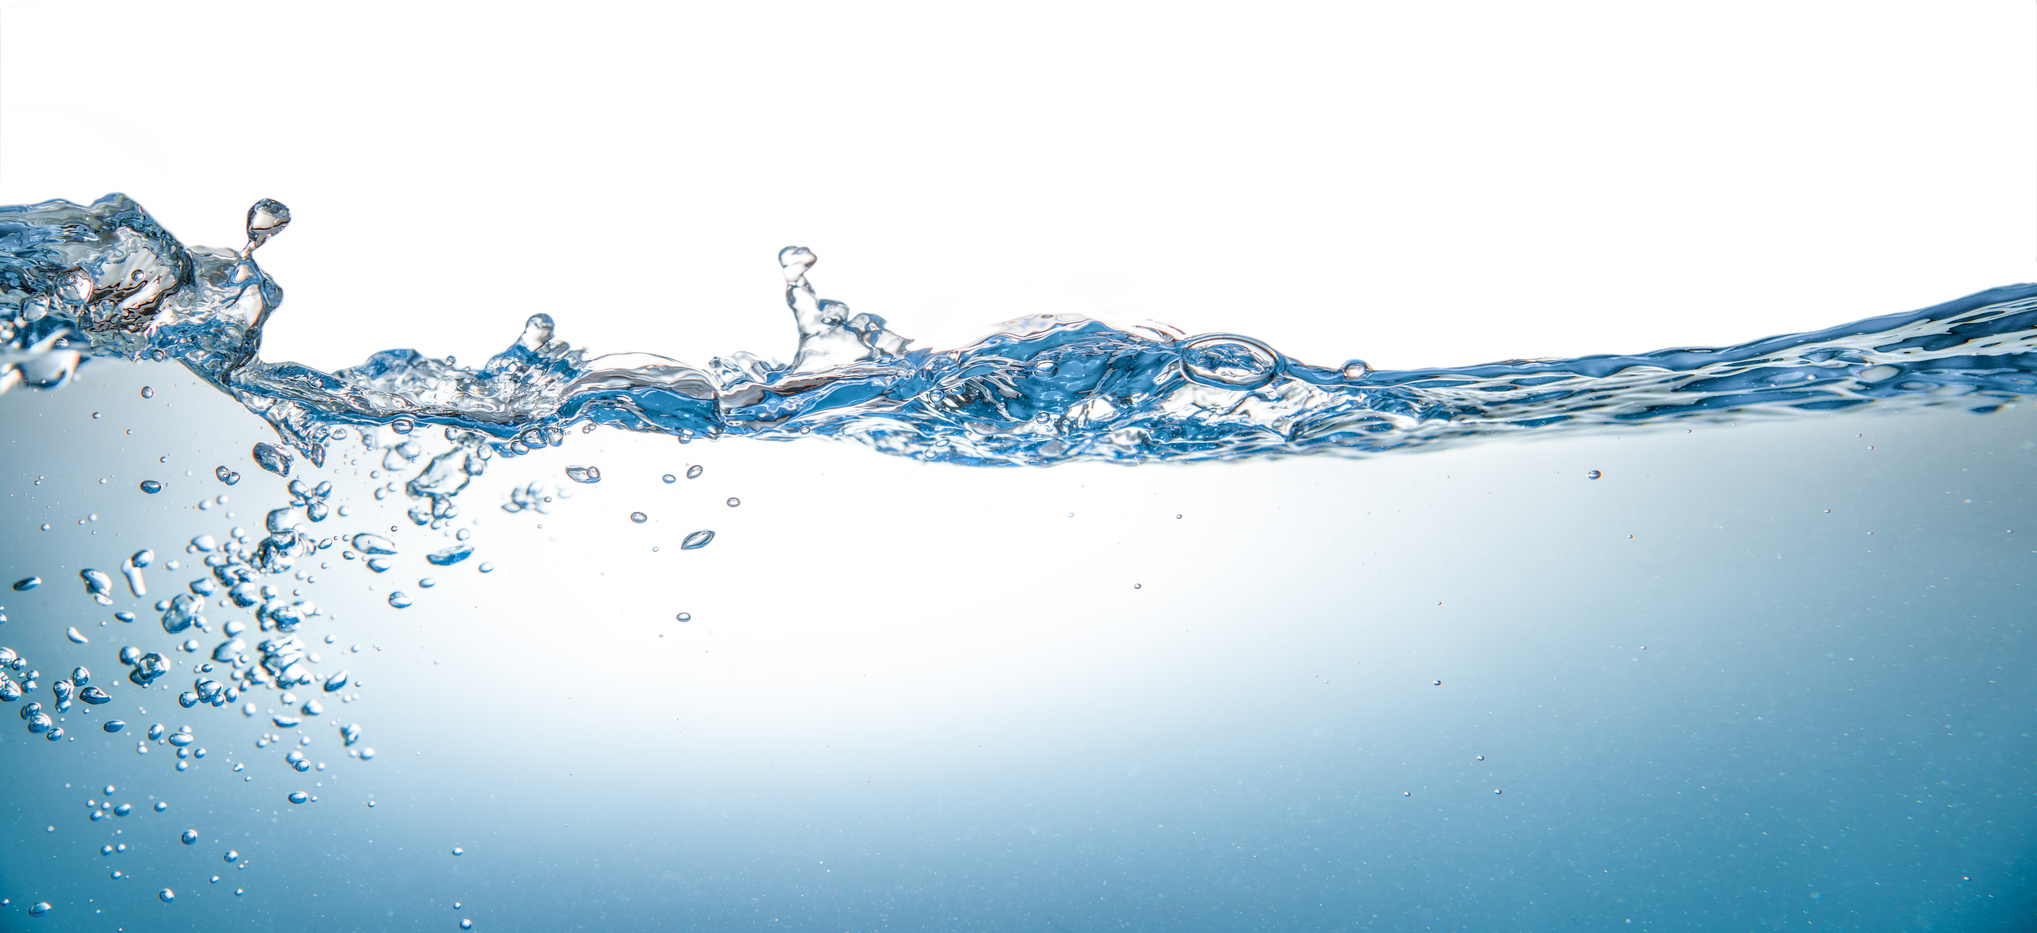 Studie über Pestizide im Grundwasser: Wasserqualität in großer Gefahr